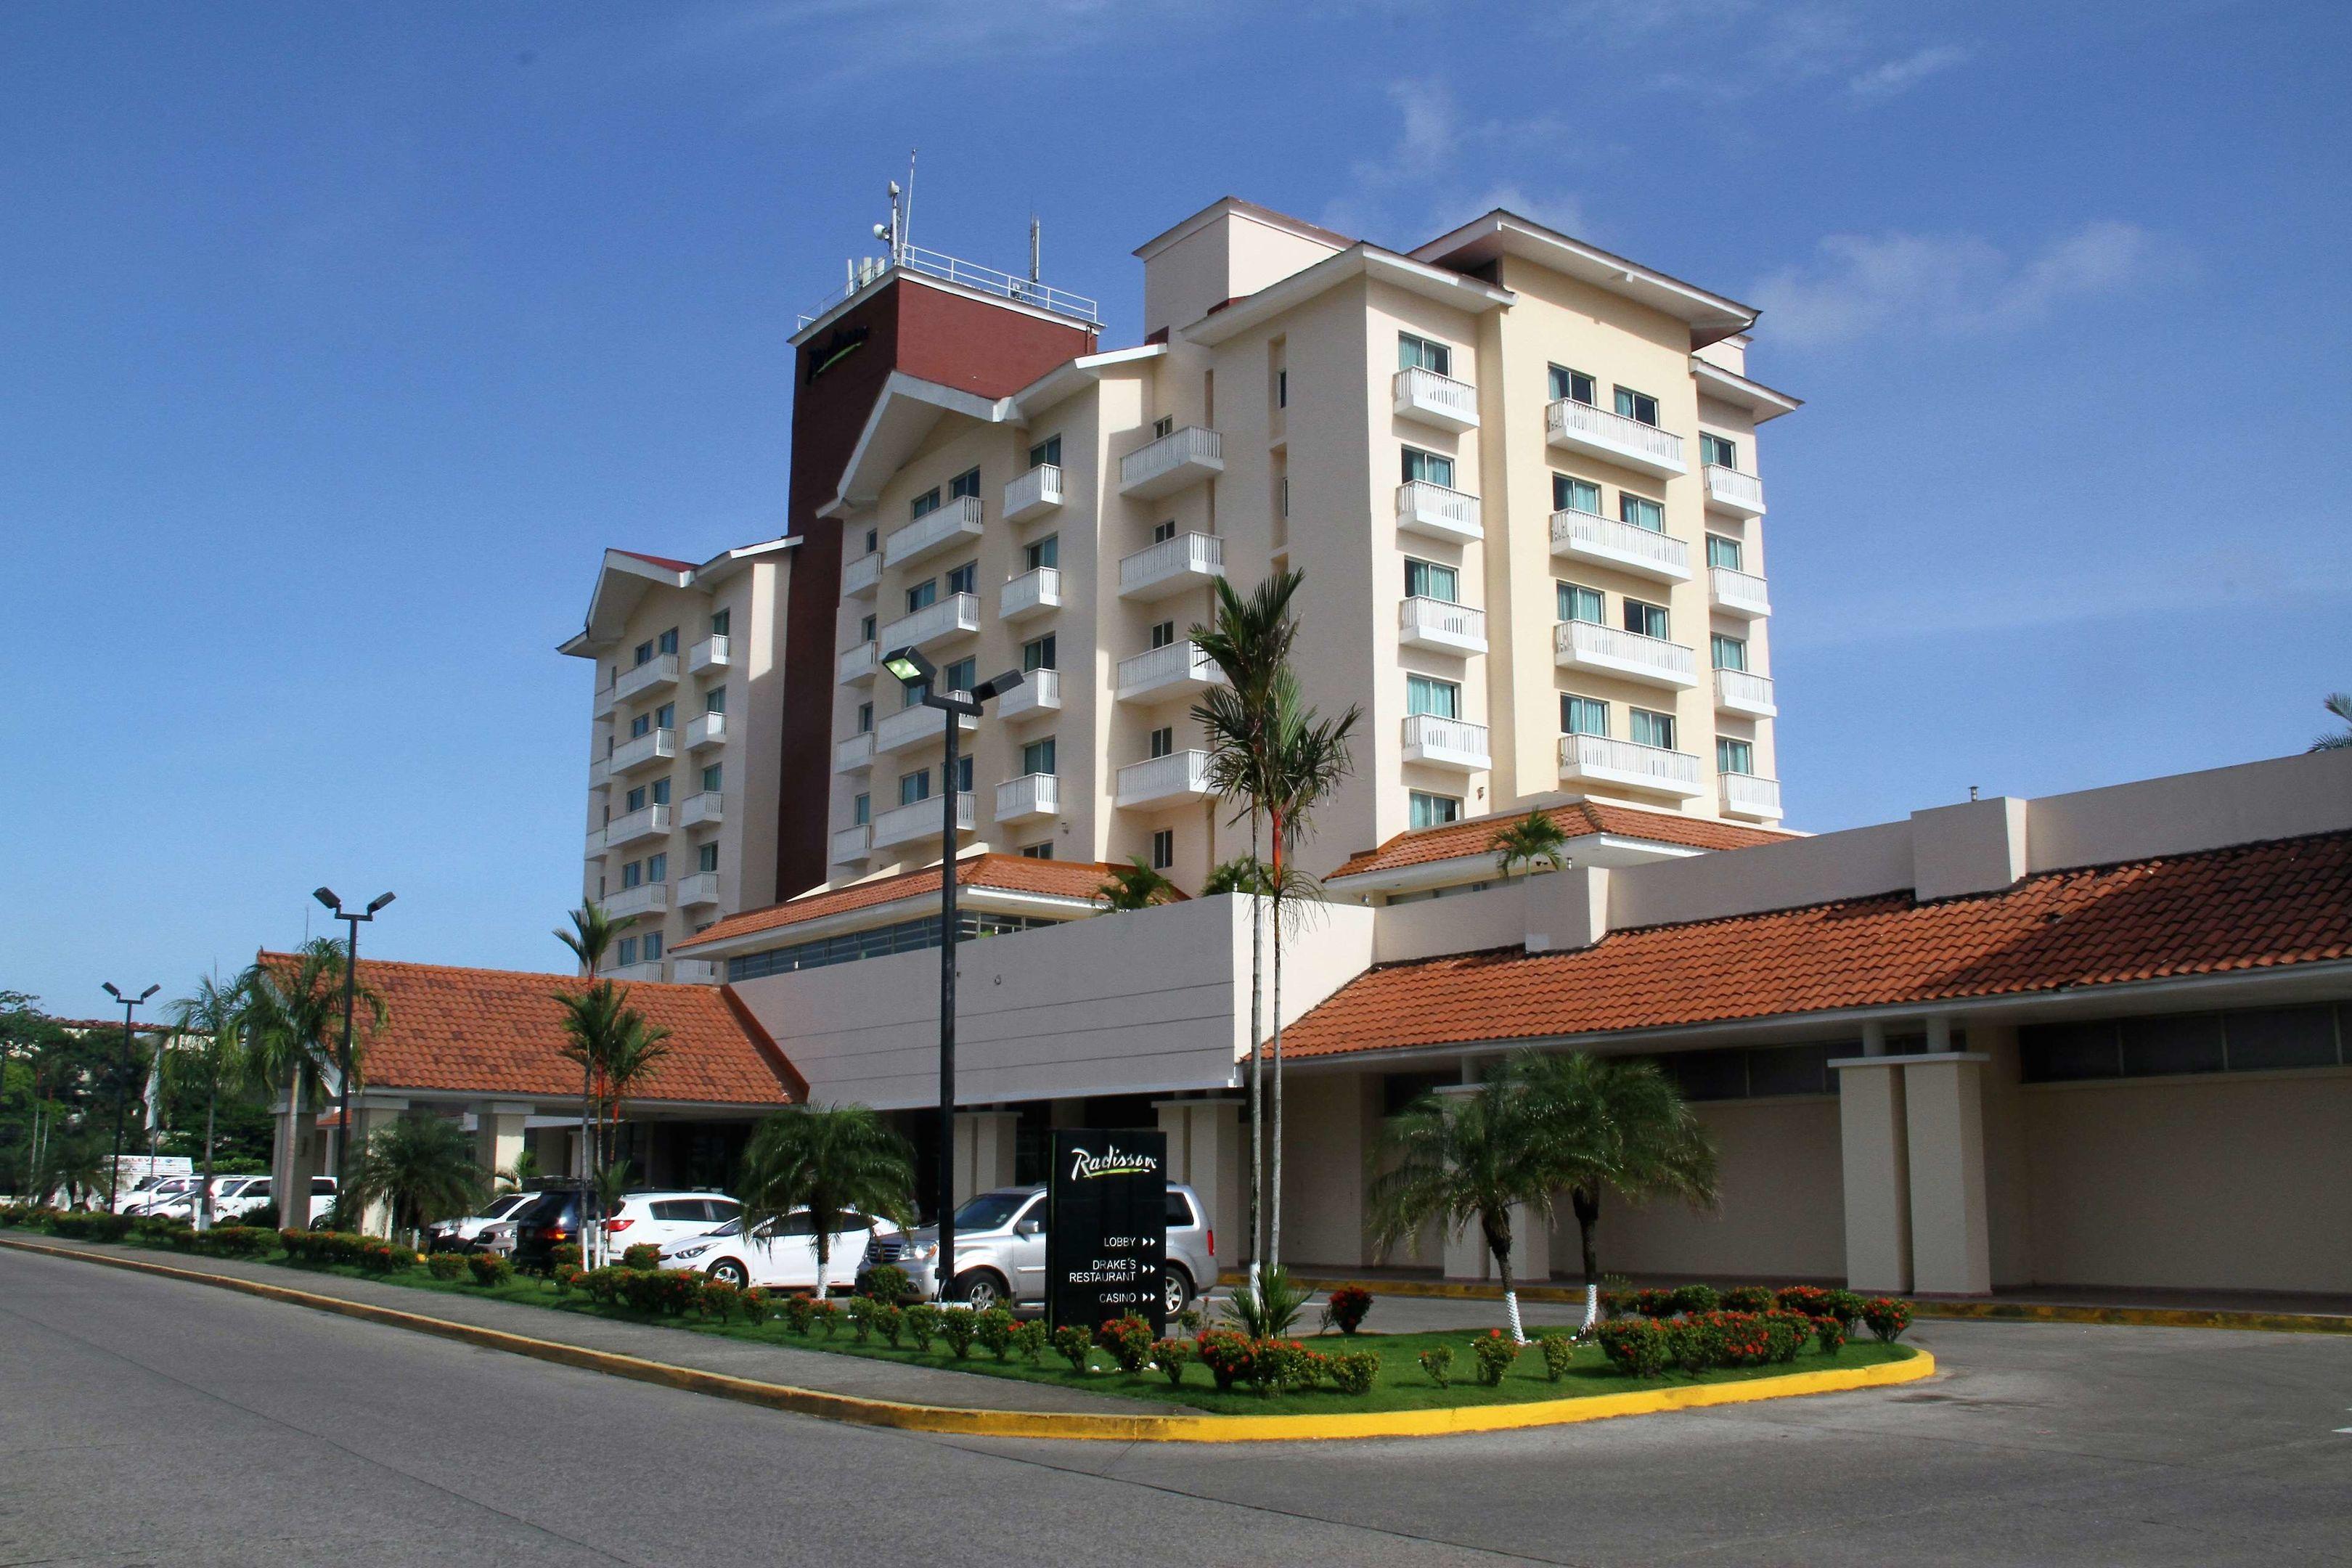 Radisson Colon 2000 Hotel & Casino